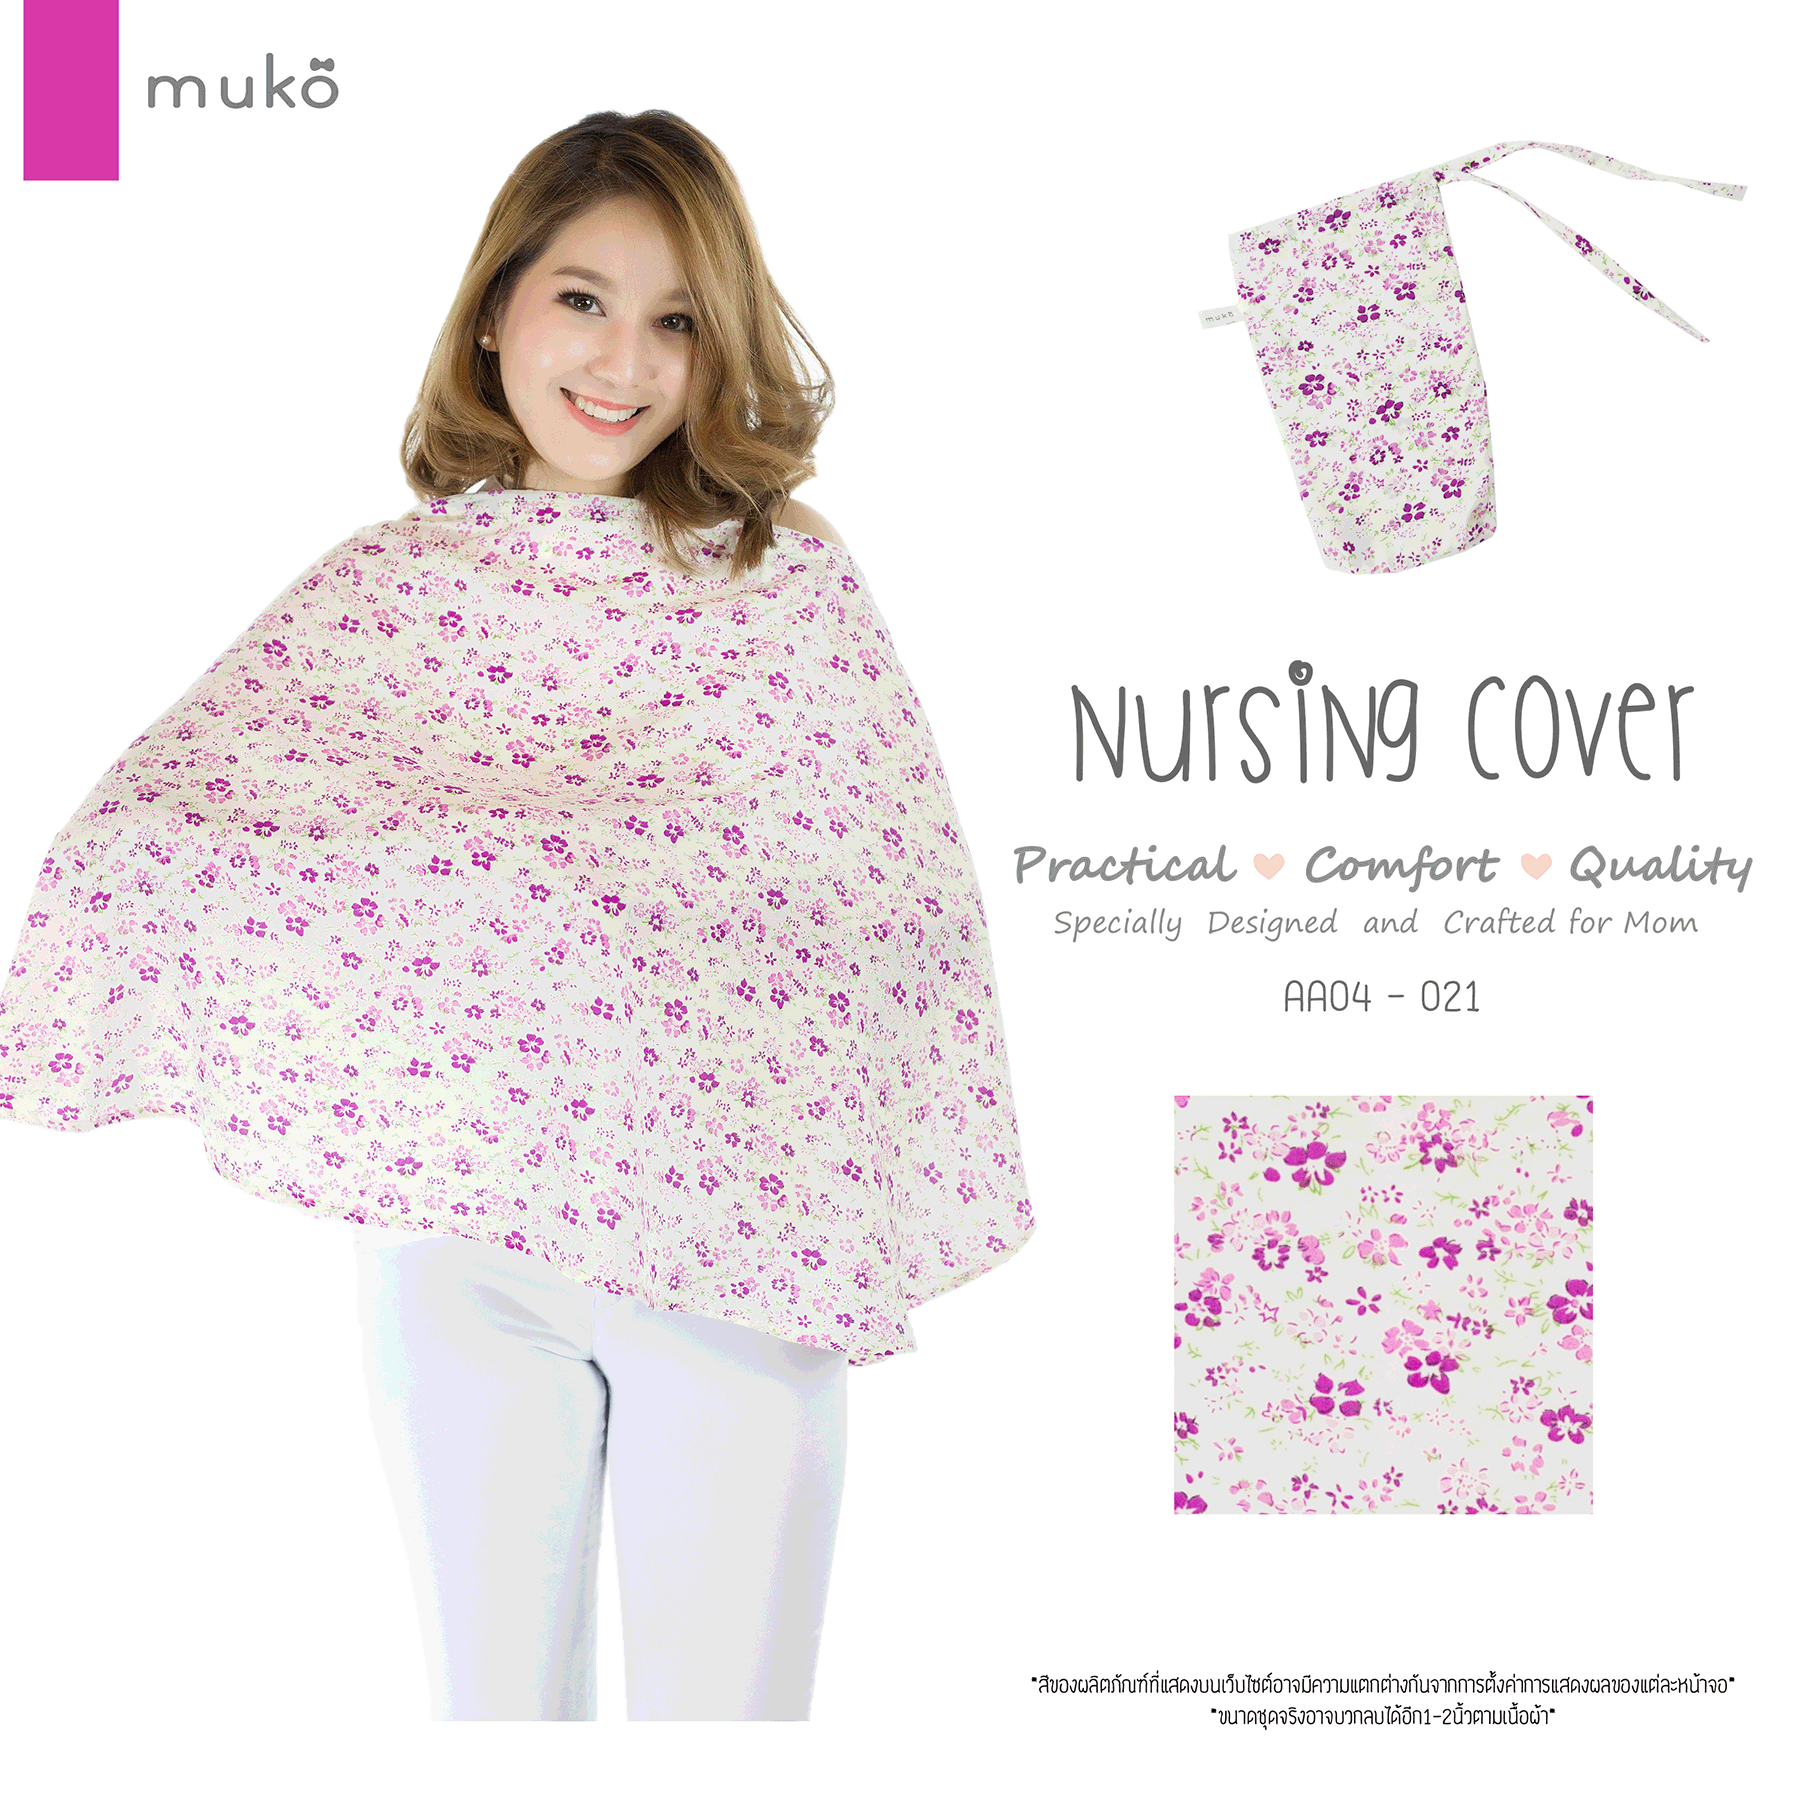 Muko Nursing Cover ผ้าคลุมให้นม AA04-021 ขาวดอกม่วง